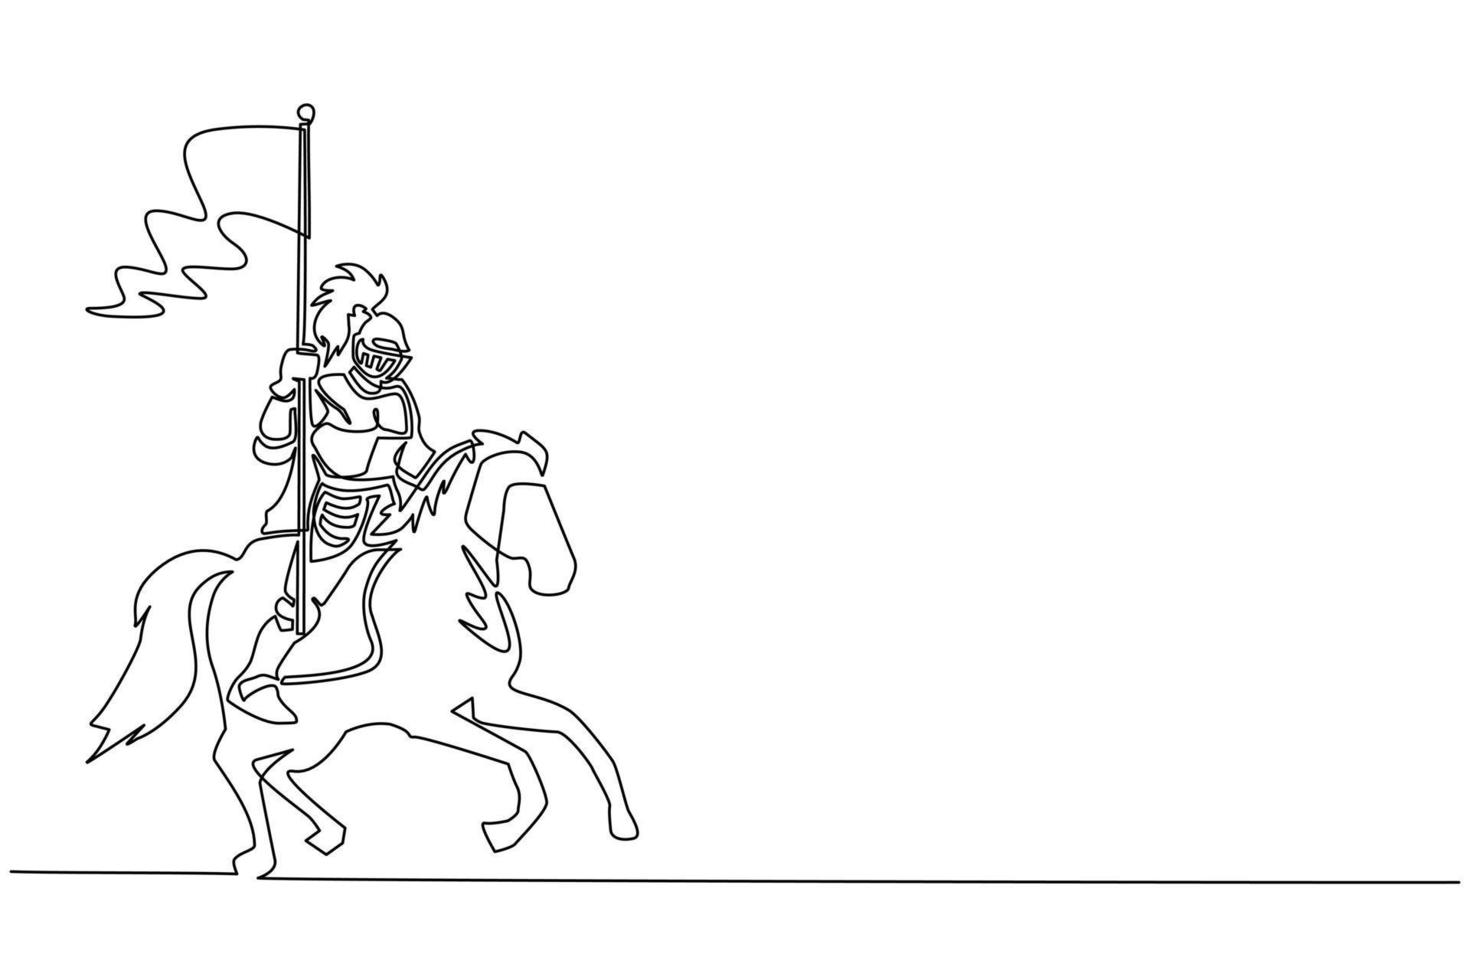 única linha contínua desenhando cavaleiro medieval a cavalo carregando bandeira. cavaleiro montado em armadura andando a cavalo no cavalo segurando a bandeira. lutador antigo. vetor de design gráfico de desenho dinâmico de uma linha